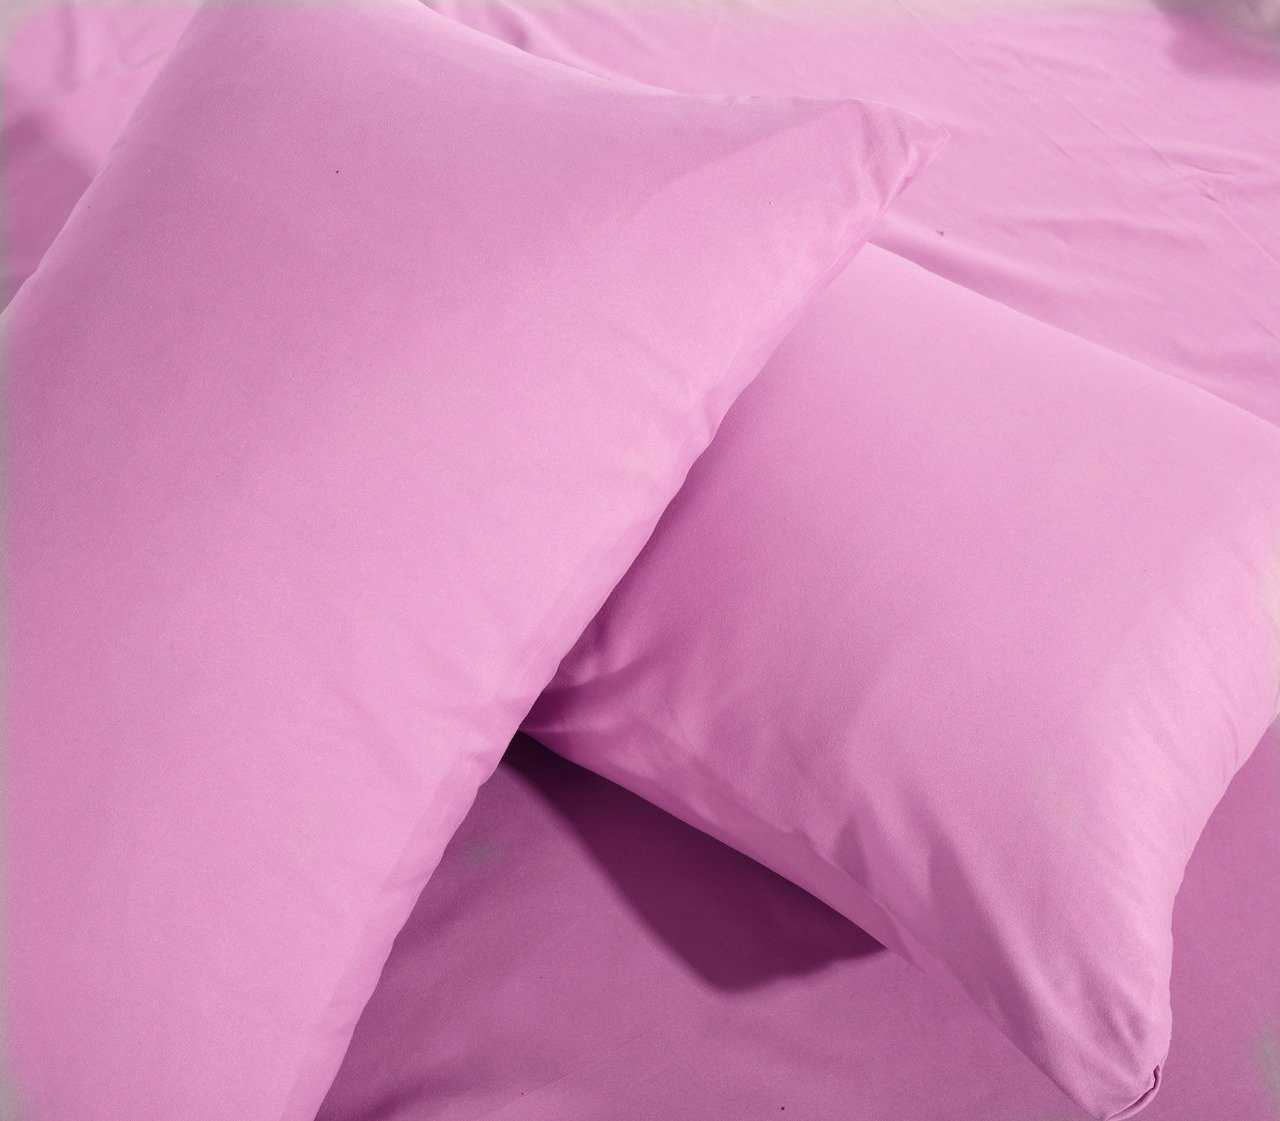 Как выбрать постельное белье — качественное и приятное для тела